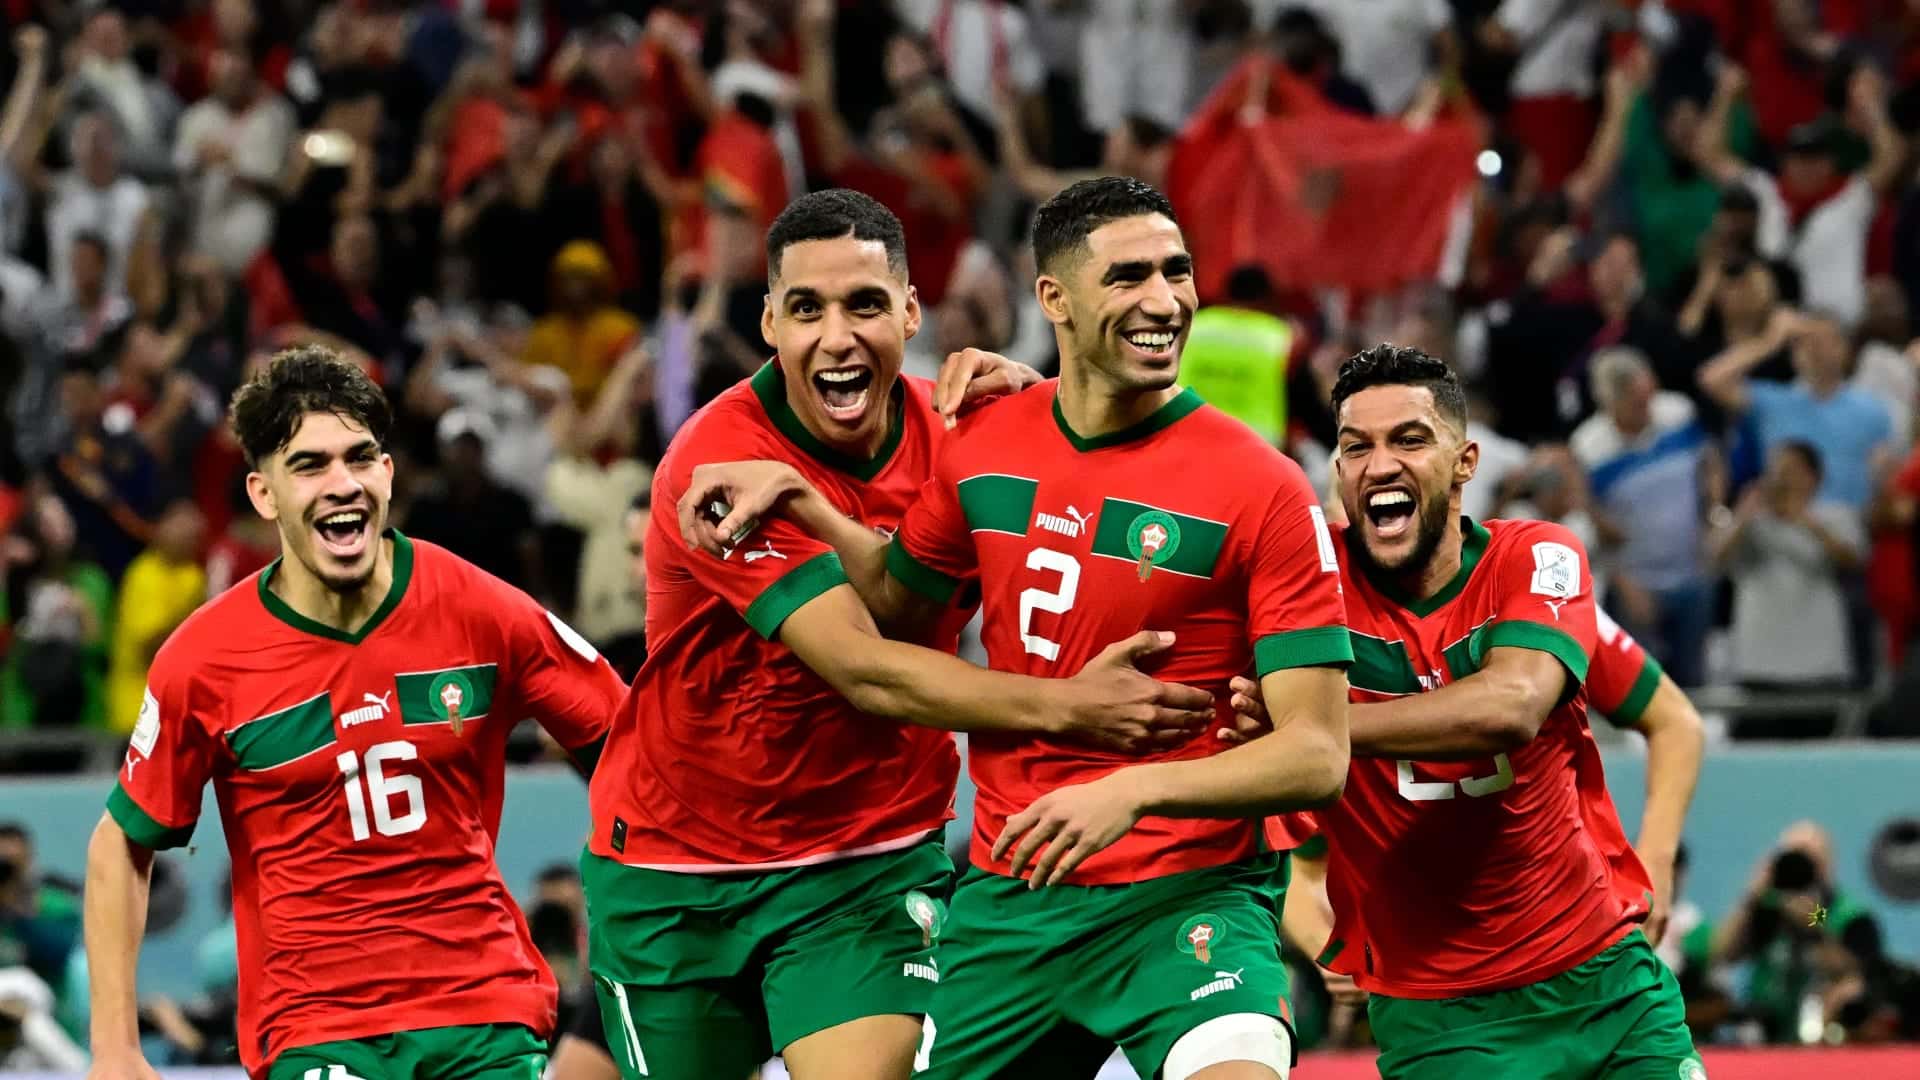 أغاني دعم “المنتخب المغربي” في مونديال قطر تتصدر الطوندونس الموسيقي المغربي